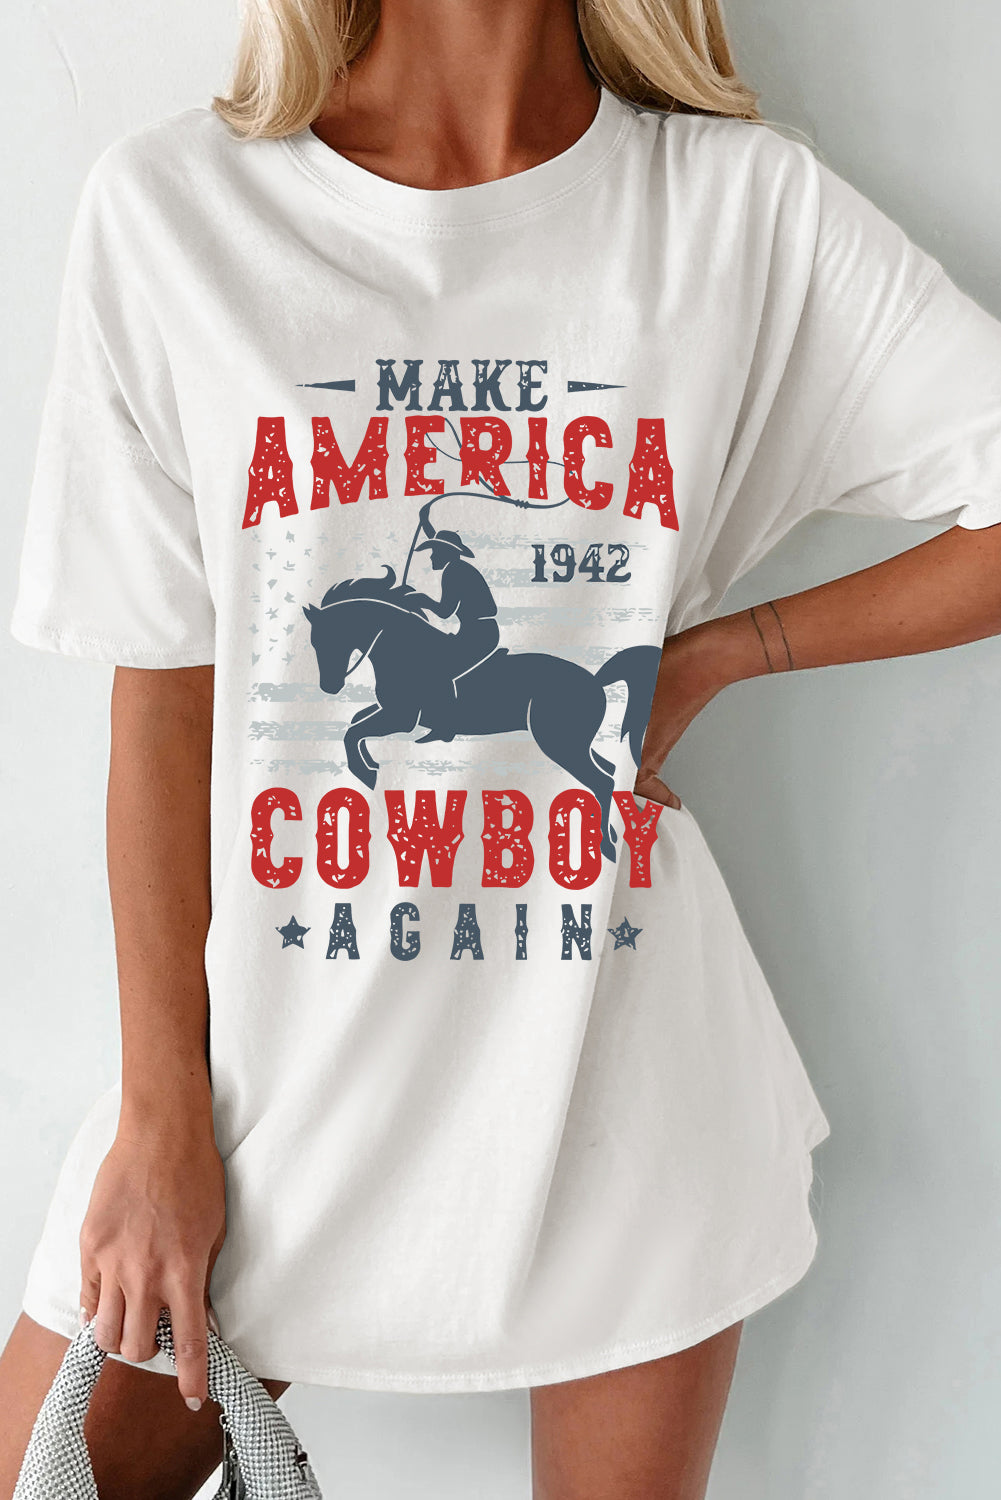 Cowboy Graphic Round Neck Half Sleeve T-Shirt